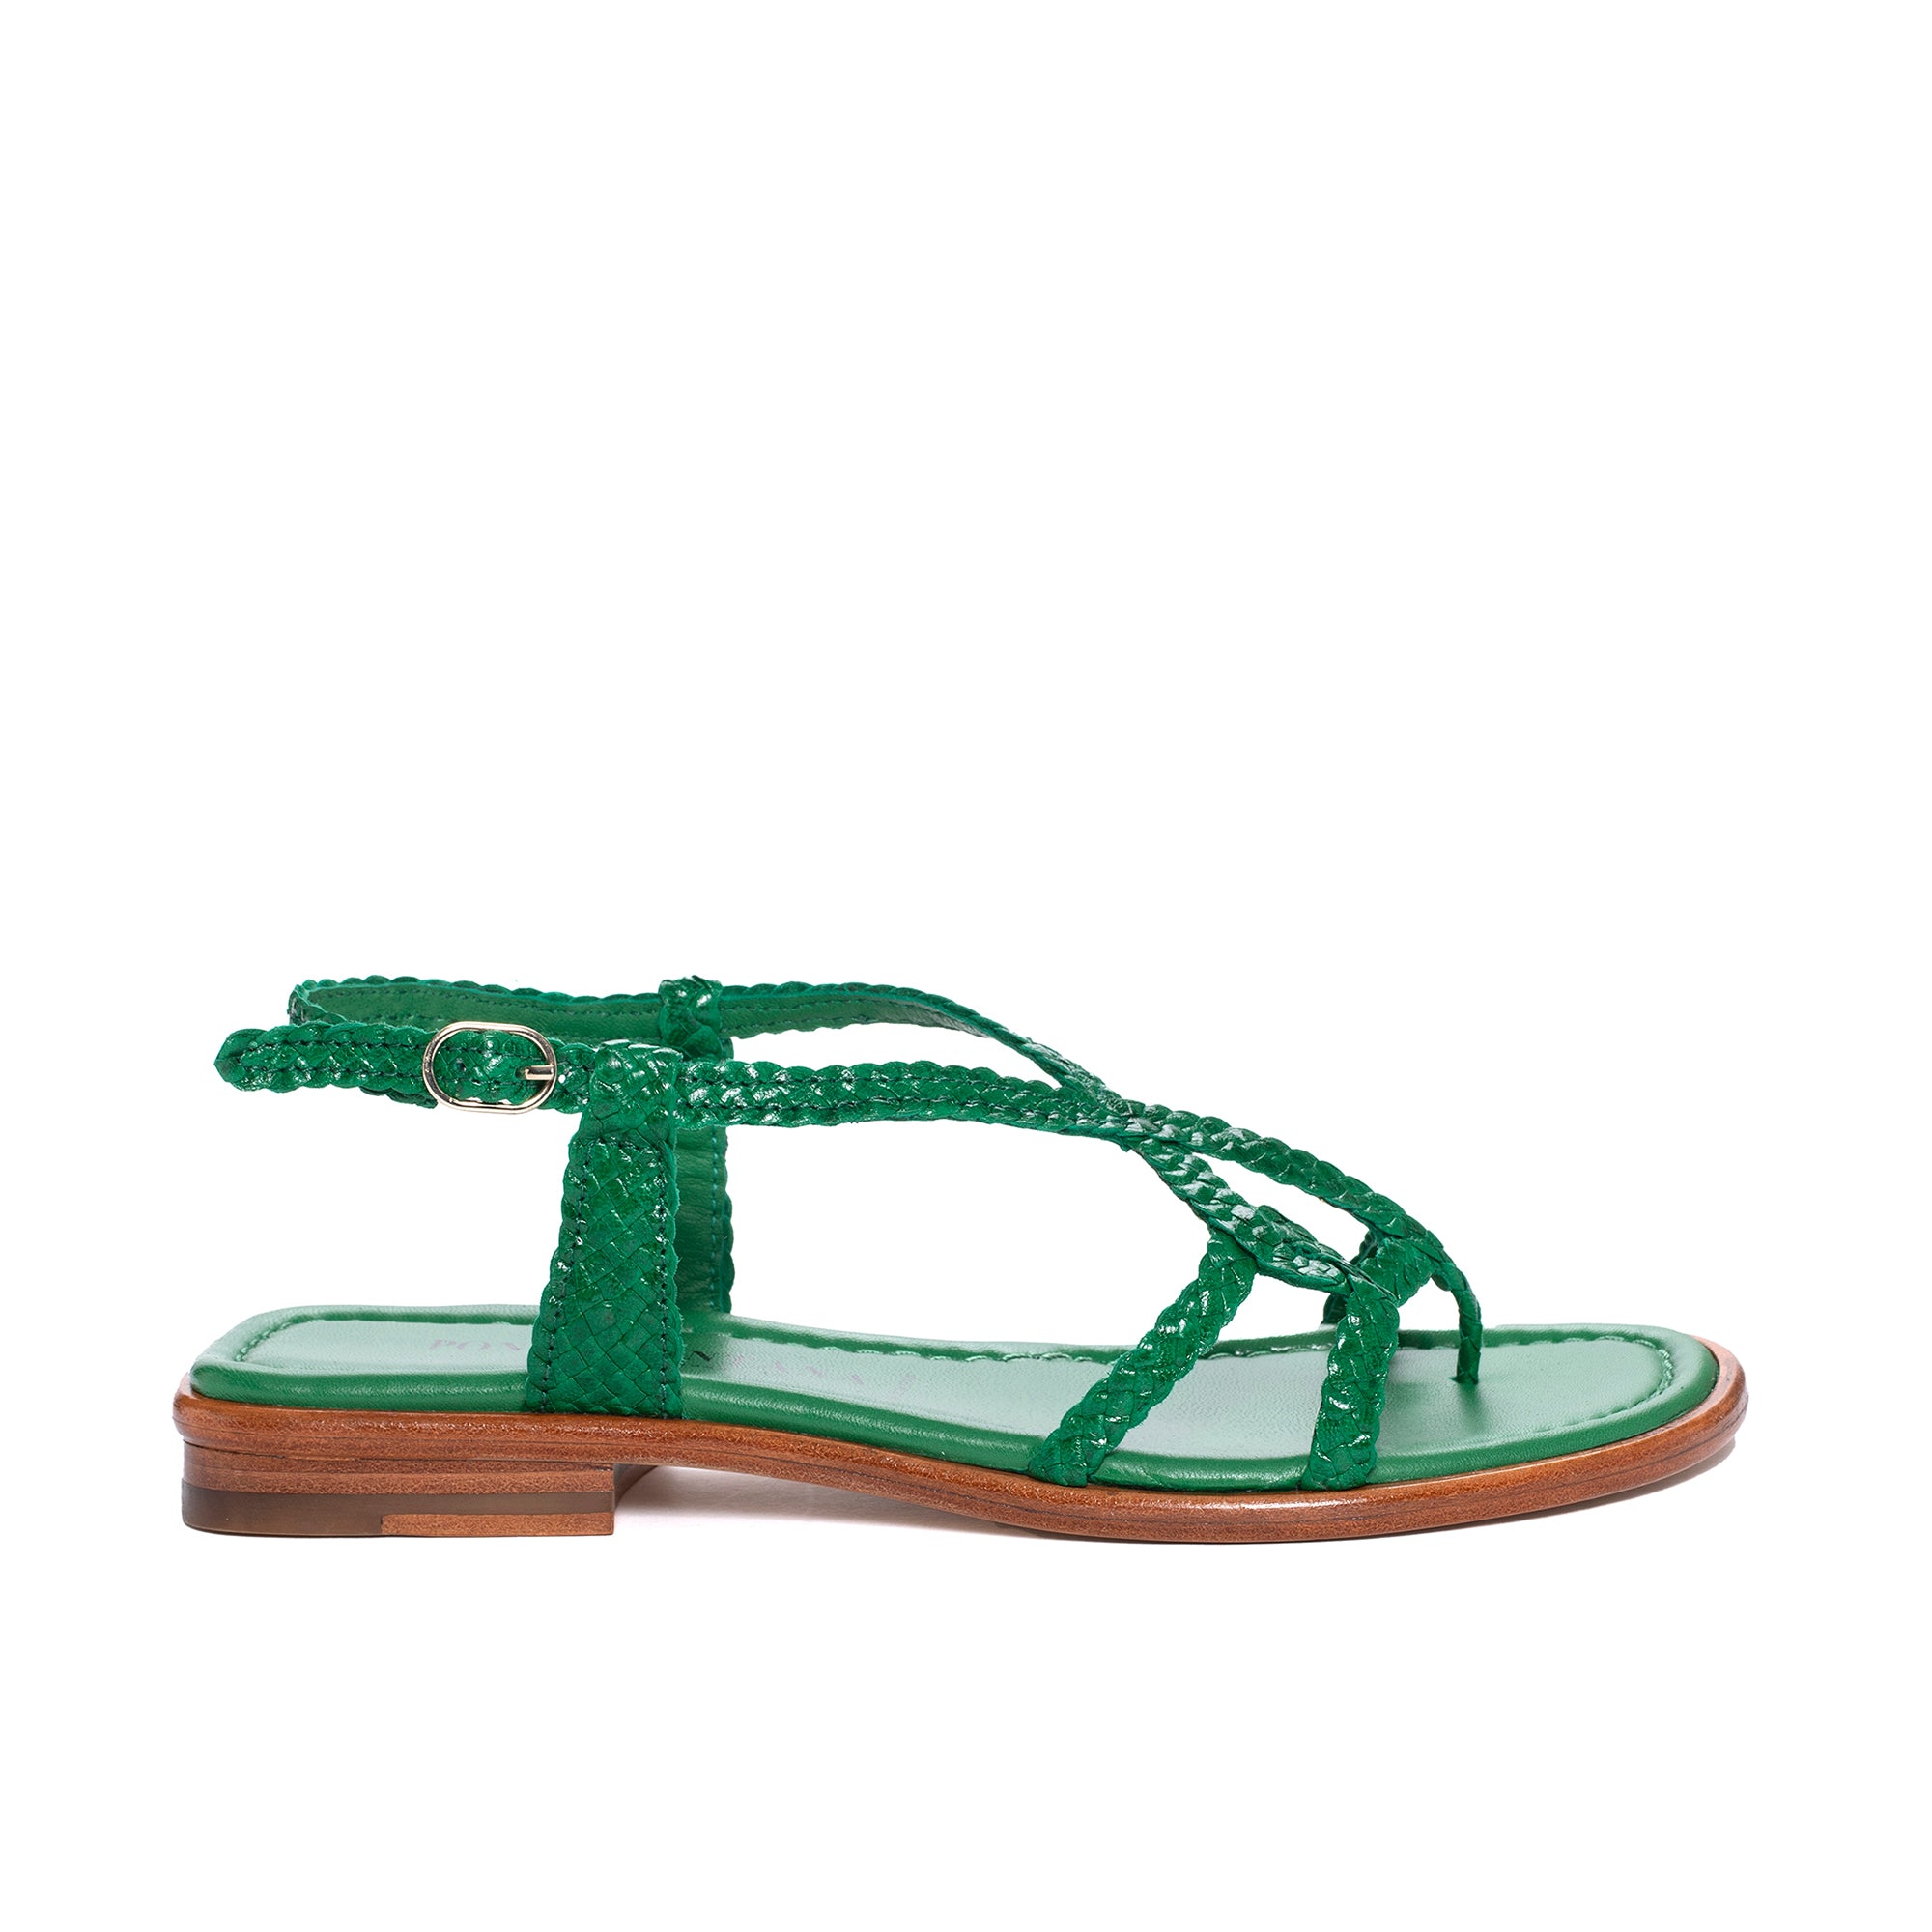 Not Rated Women Sylen Beige T-Strap Flats Sandals Size 8.5 M, EU 40 NEW  5903 | eBay